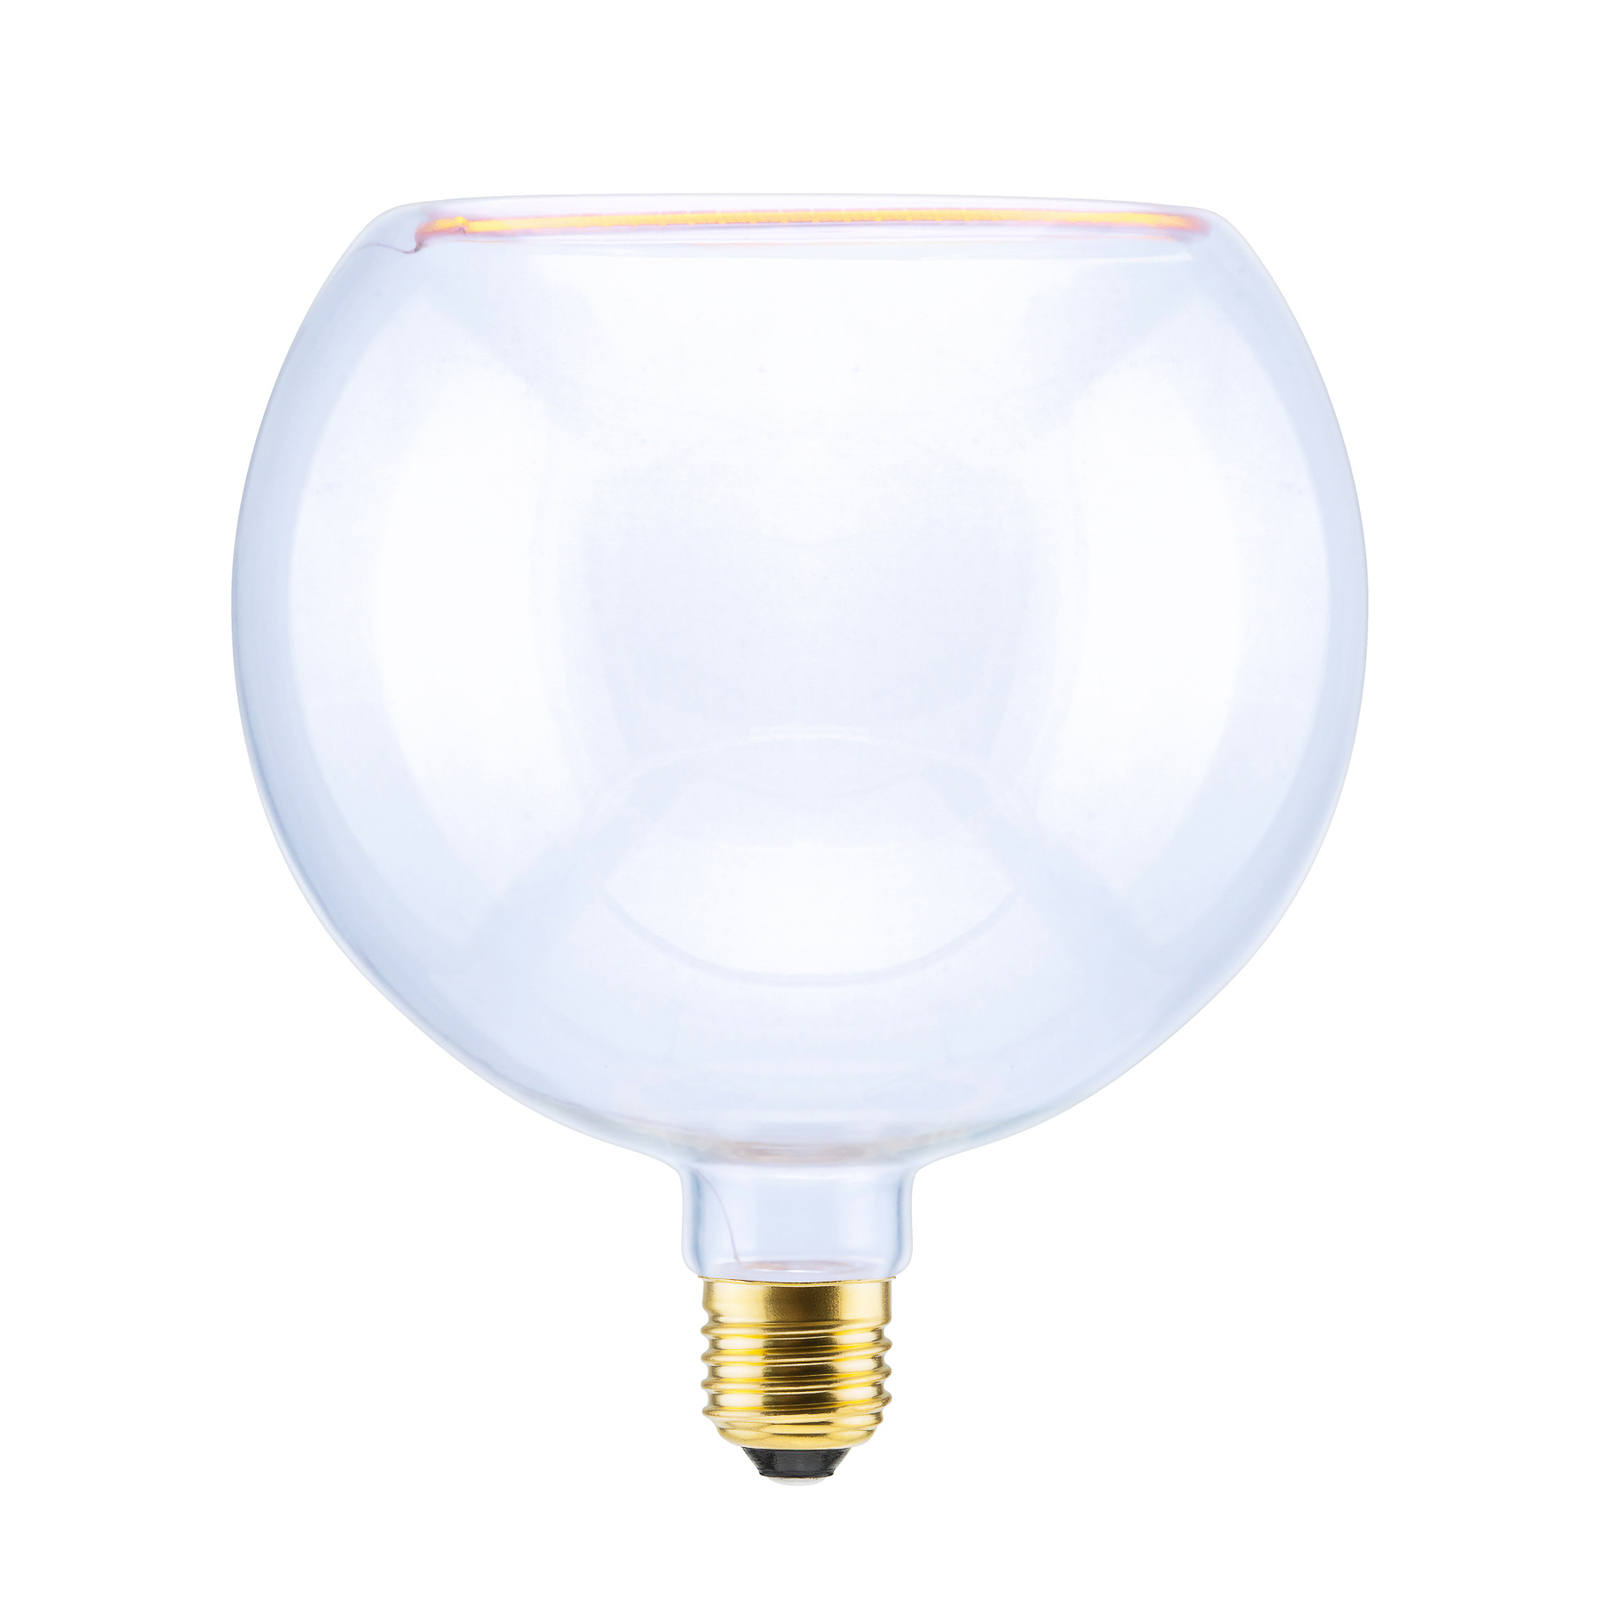 SEGULA floating globe LED bulb G200 E27 5 W clear